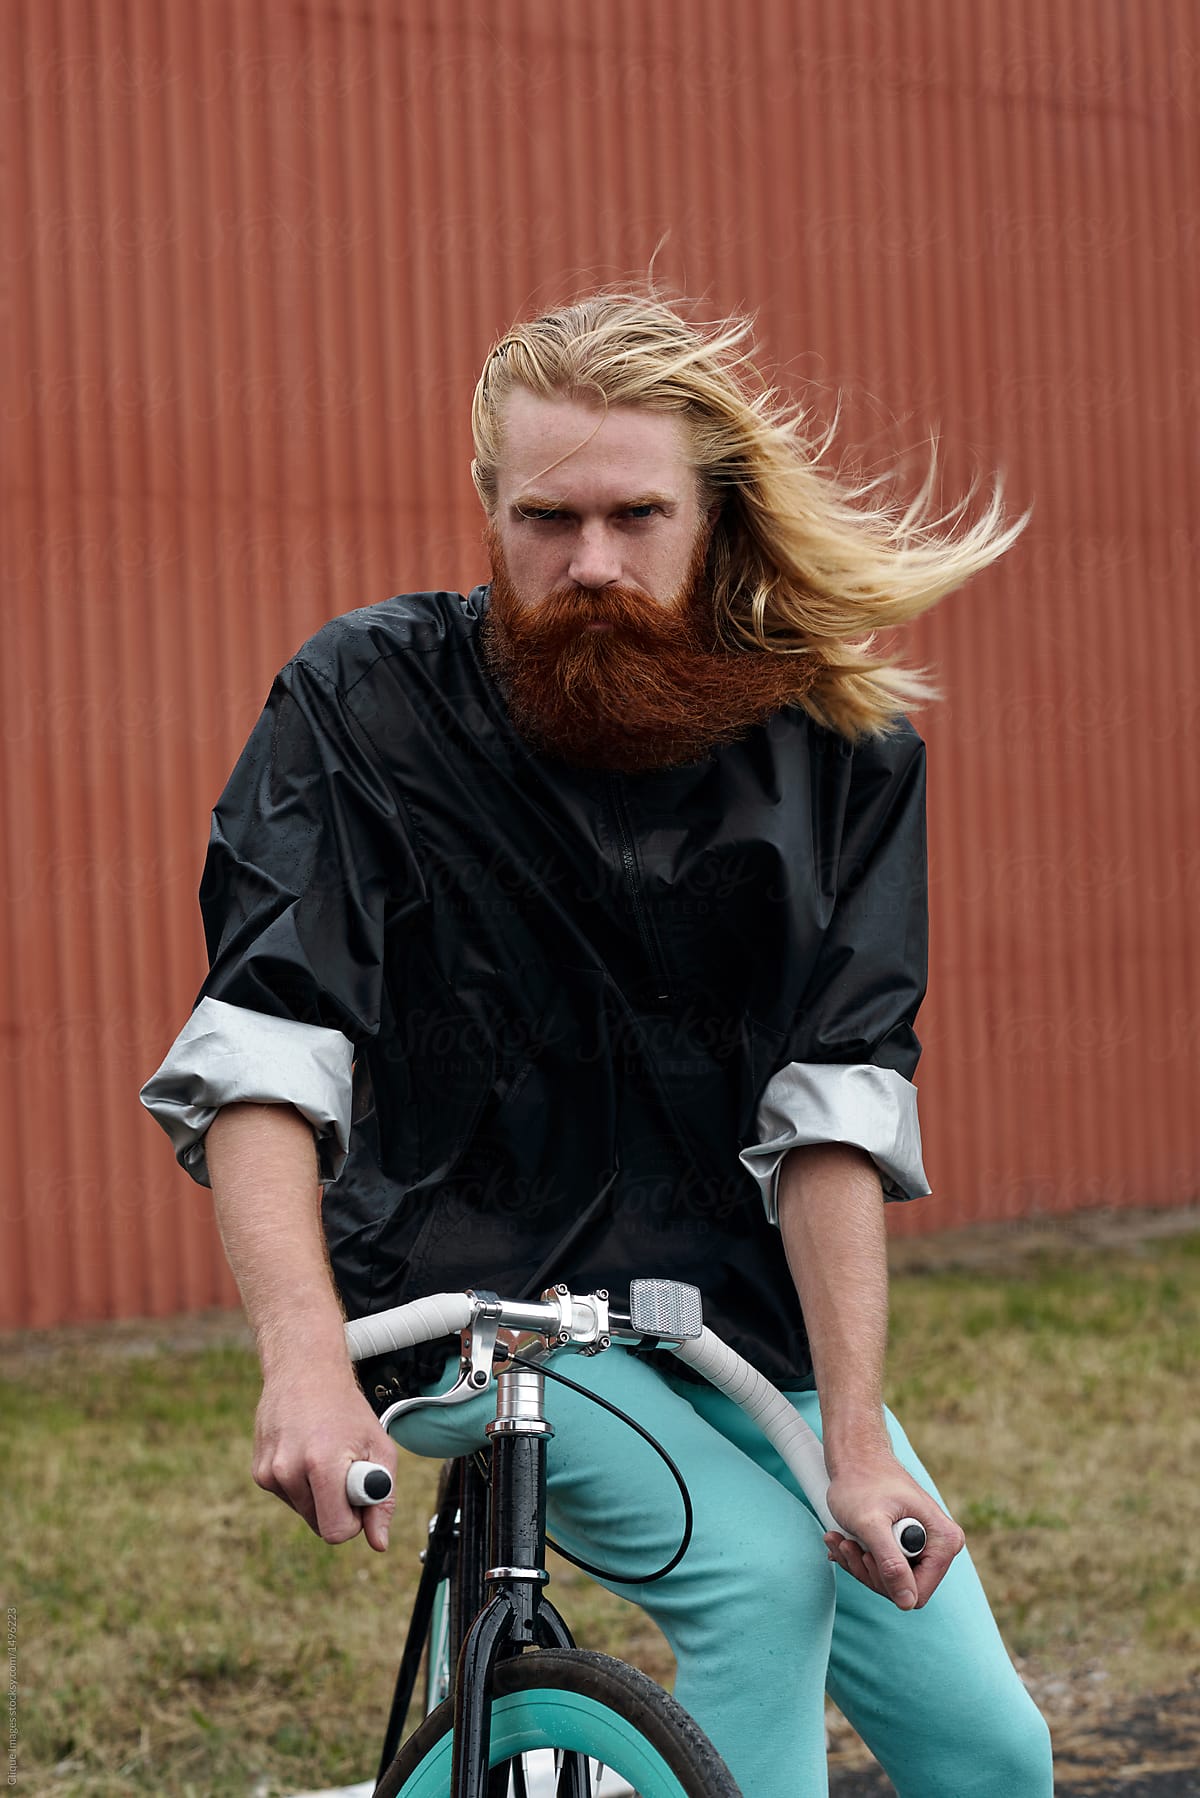 Nordic guy on bike